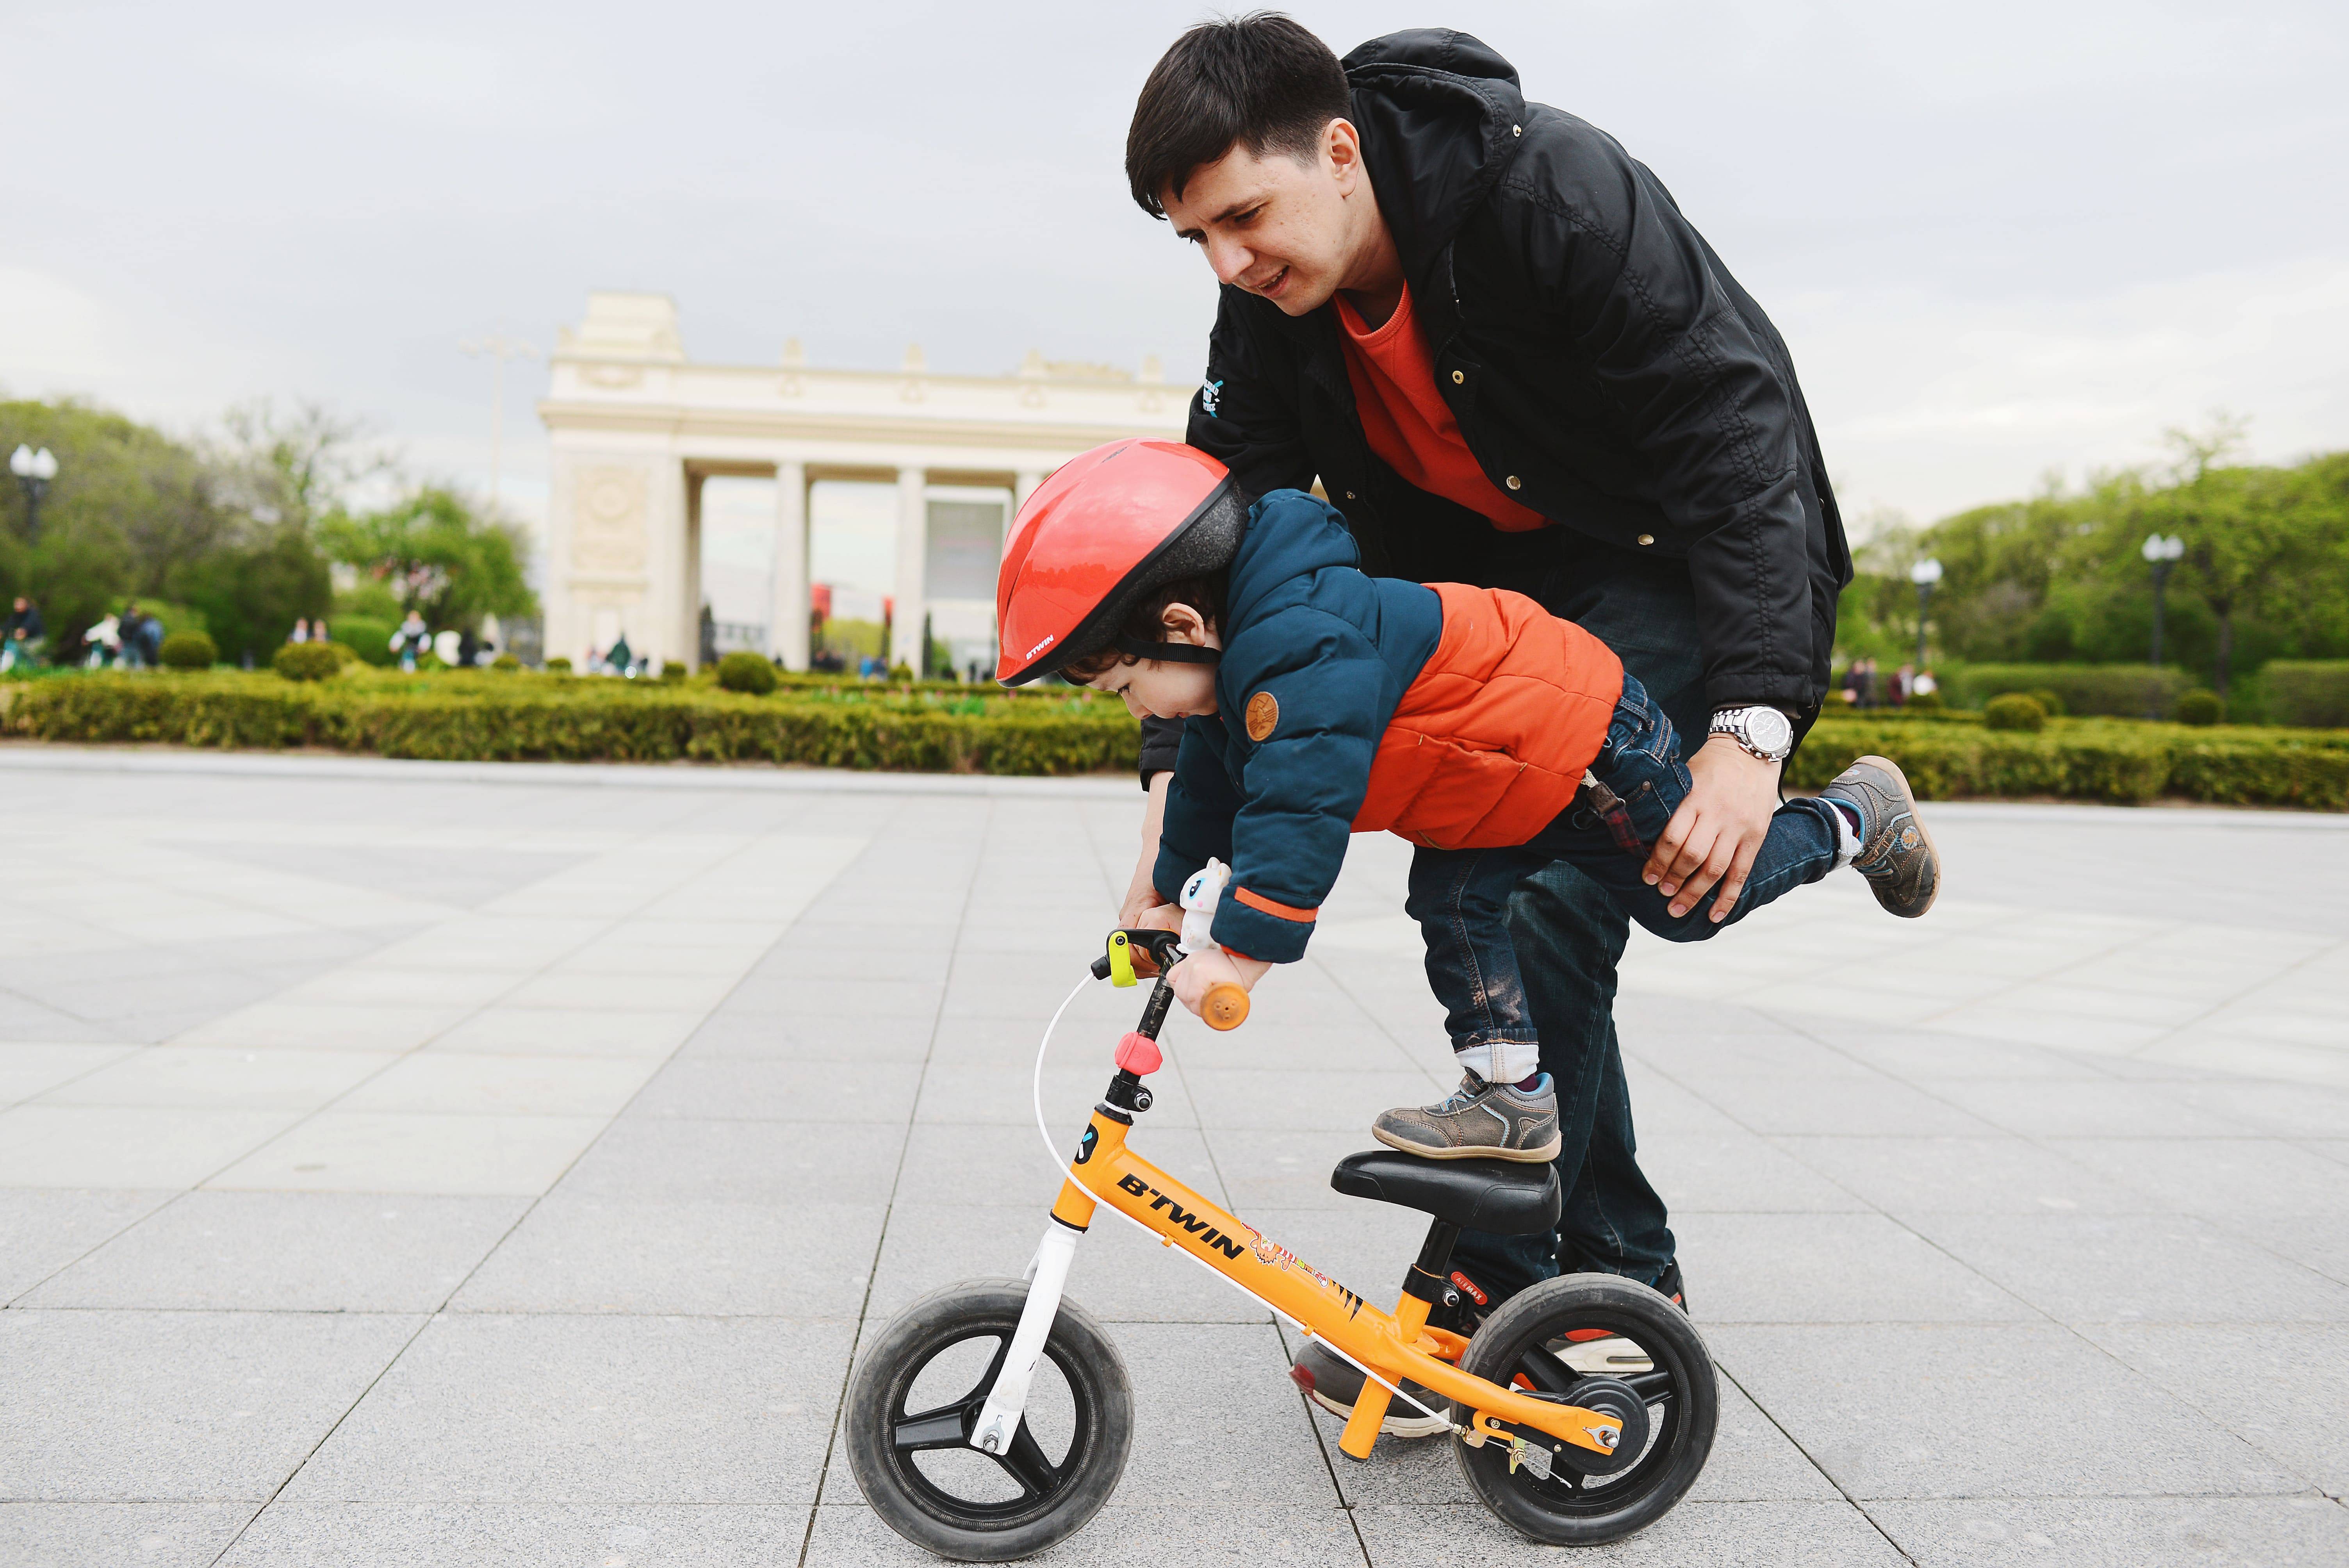 Как быстро и правильно научить ребенка кататься на двух и трехколесном велосипеде: инструкция